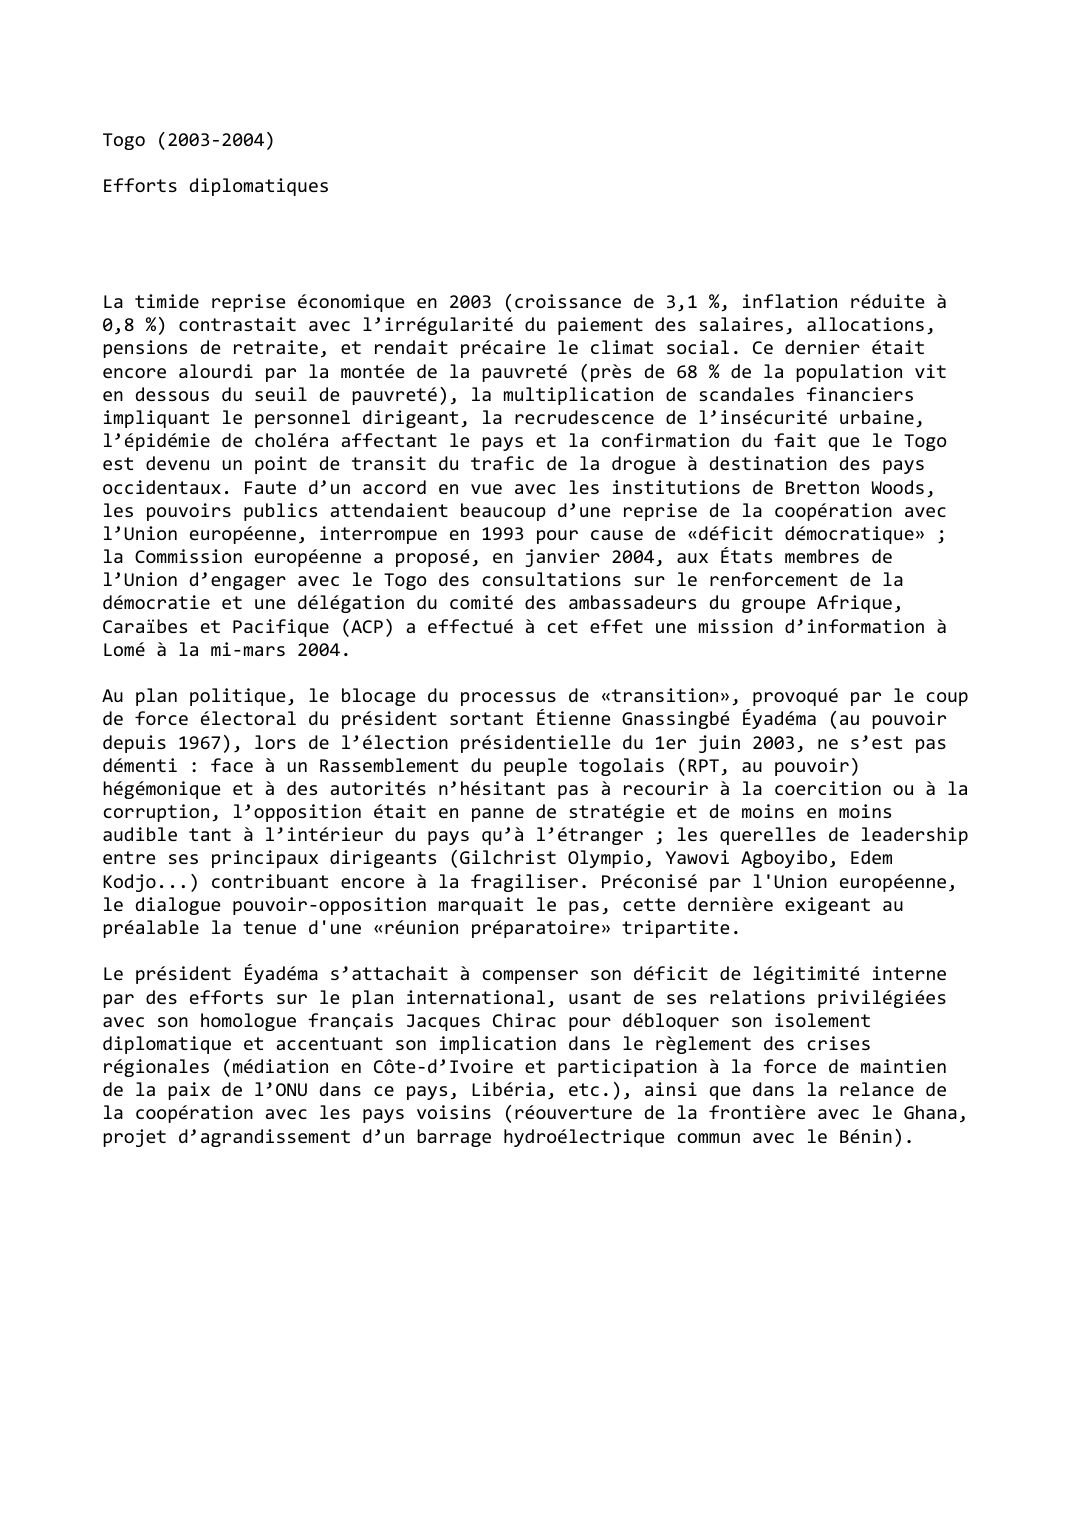 Prévisualisation du document Togo (2003-2004)

Efforts diplomatiques